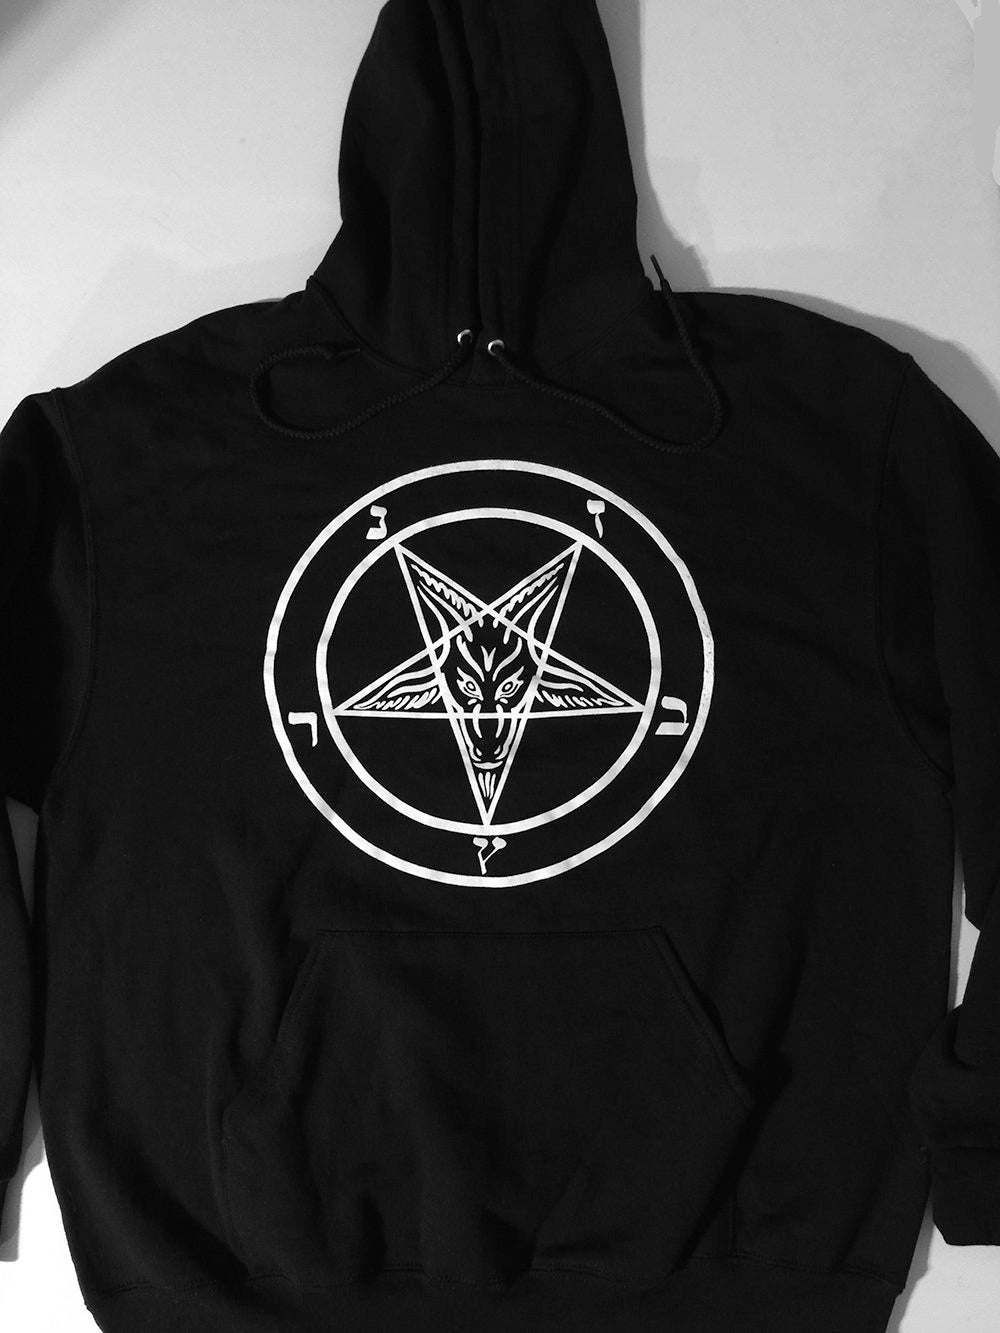 Blood Satan Pentagram Occult Religion Goth - Satanic Pentagram T